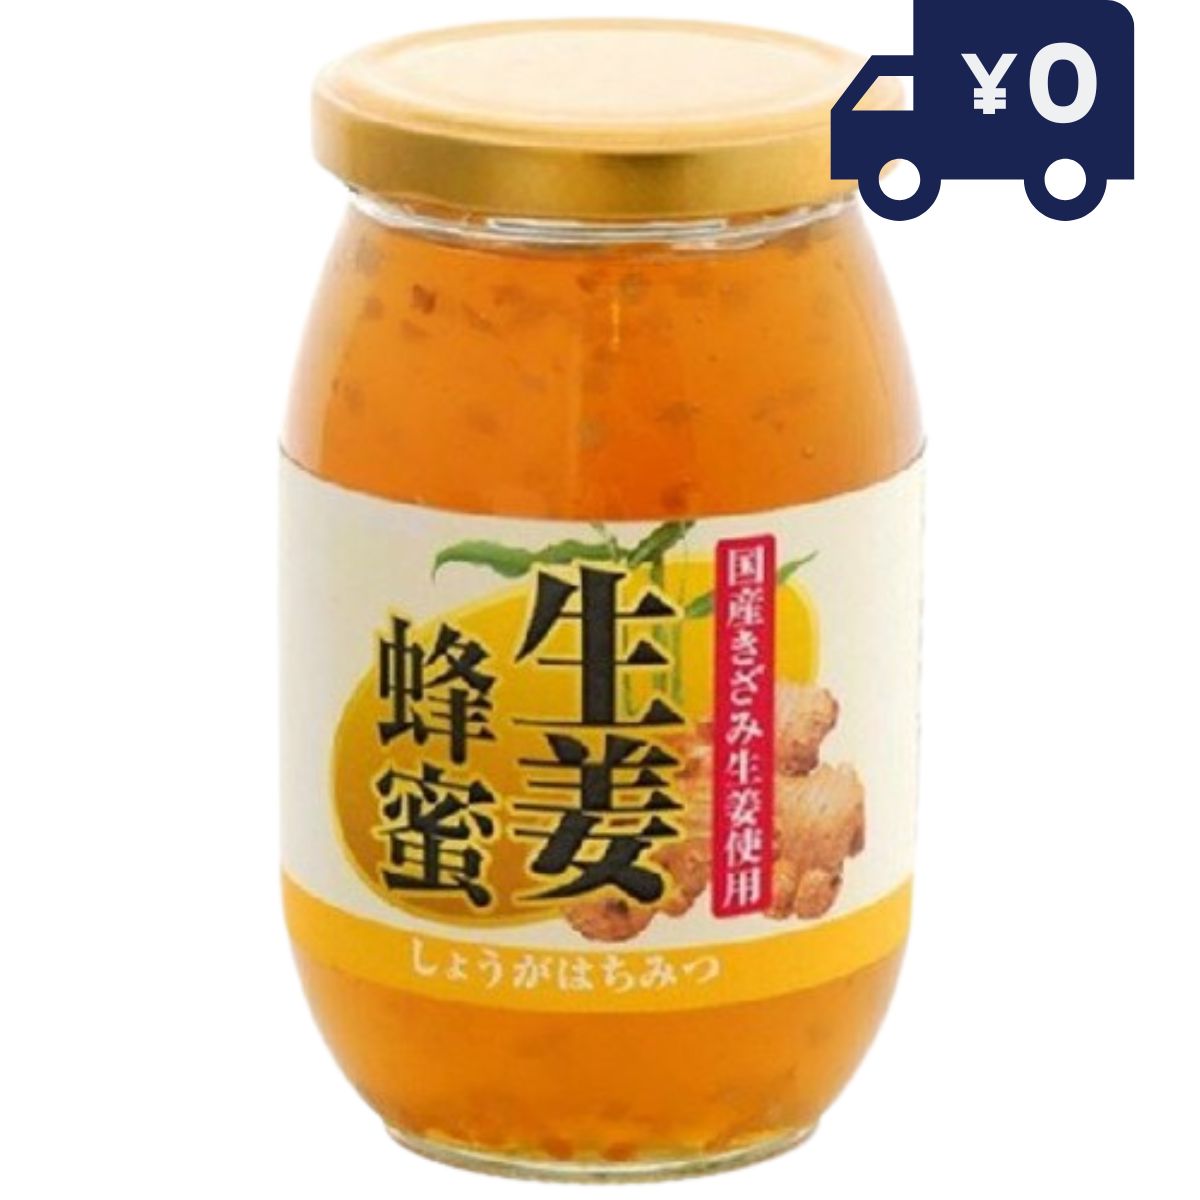 リケン 国産きざみ生姜使用 生姜蜂蜜 400g リケン 日本製 ユニマットリケン 健康食品 はちみつ しょうが]